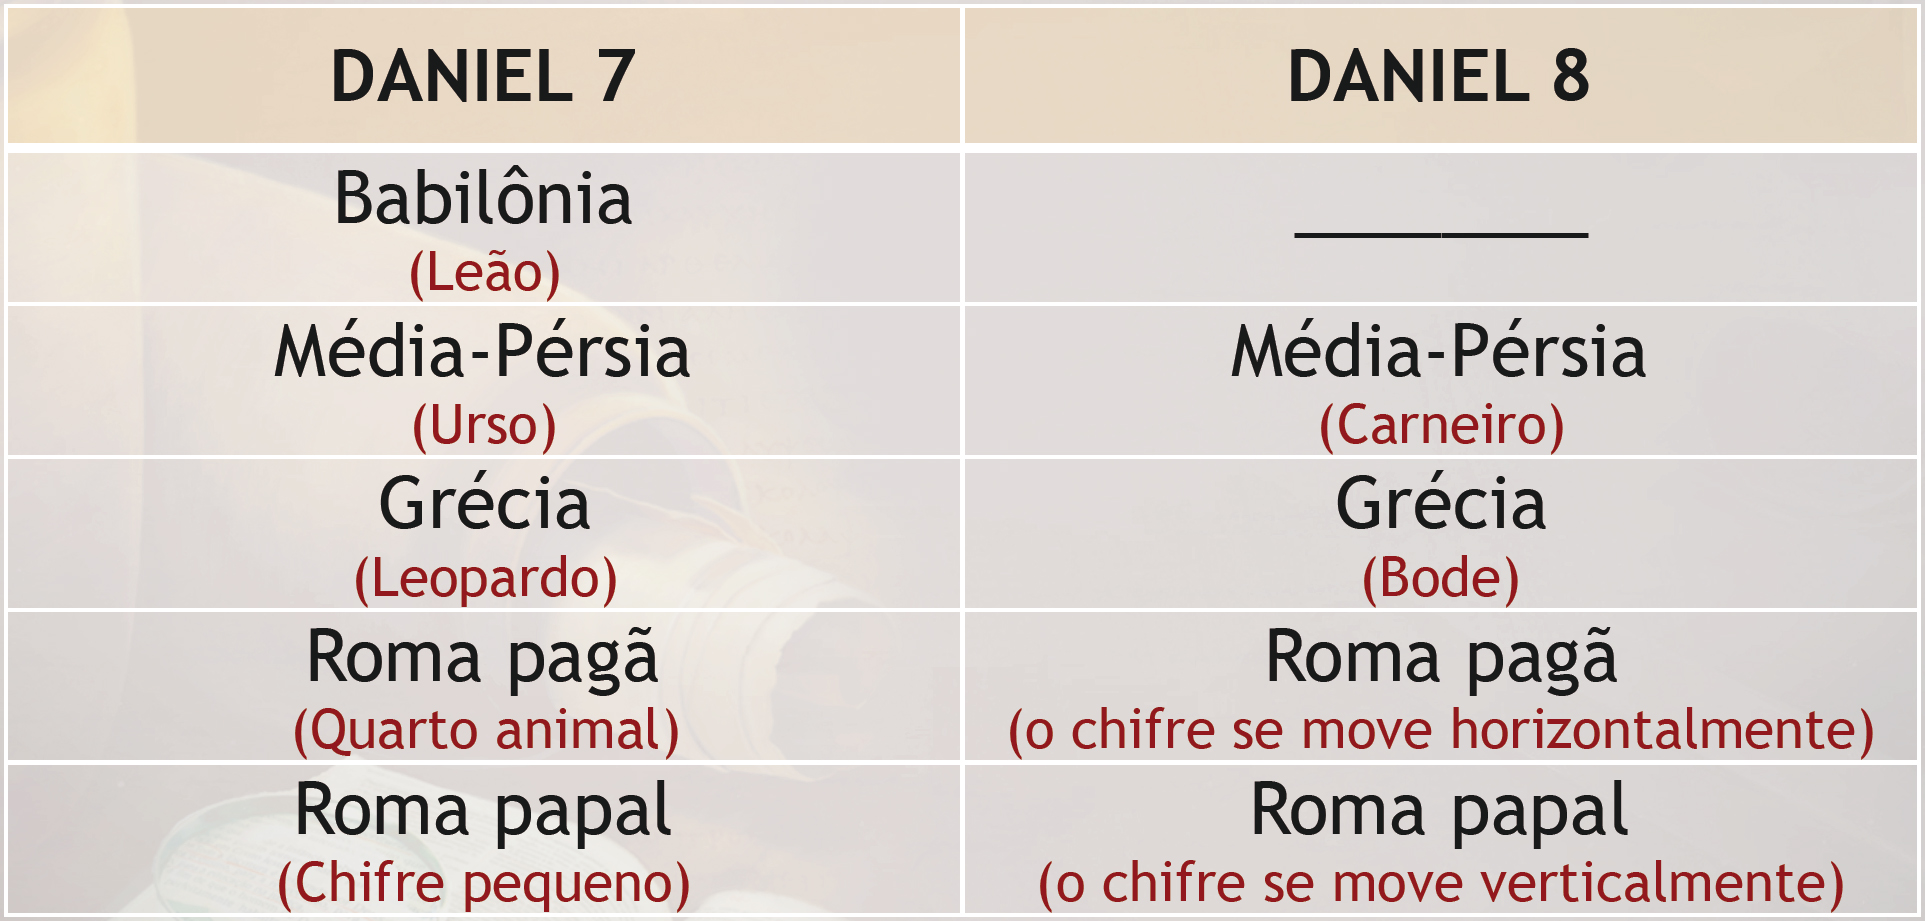 Profecias: Comparação entre Daniel 7 e Daniel 8